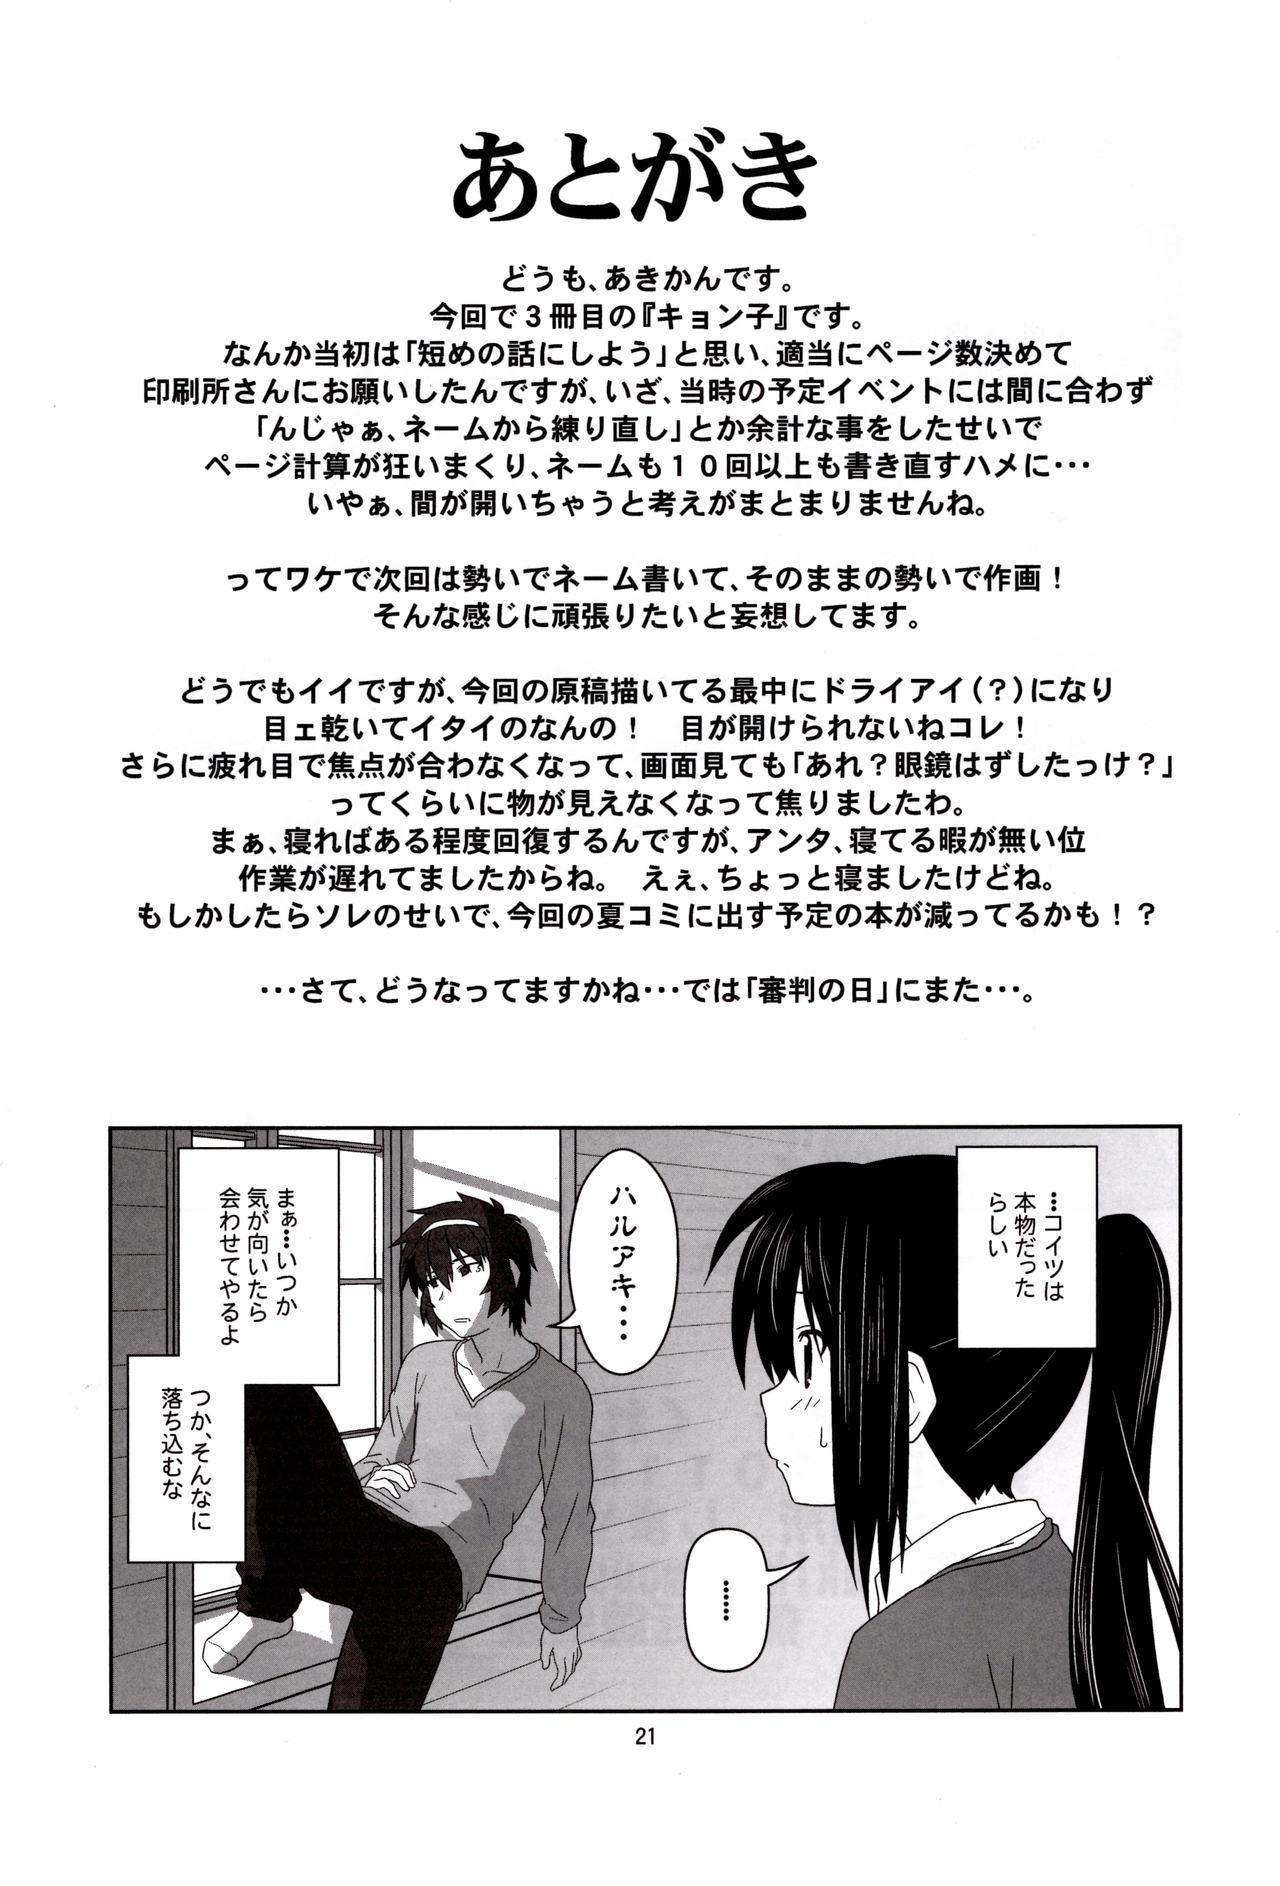 Periscope Kyonko "Yukiyama Shoukougun?" | Kyonko's Snowy Mountain Syndrome? - The melancholy of haruhi suzumiya | suzumiya haruhi no yuuutsu Gilf - Page 20